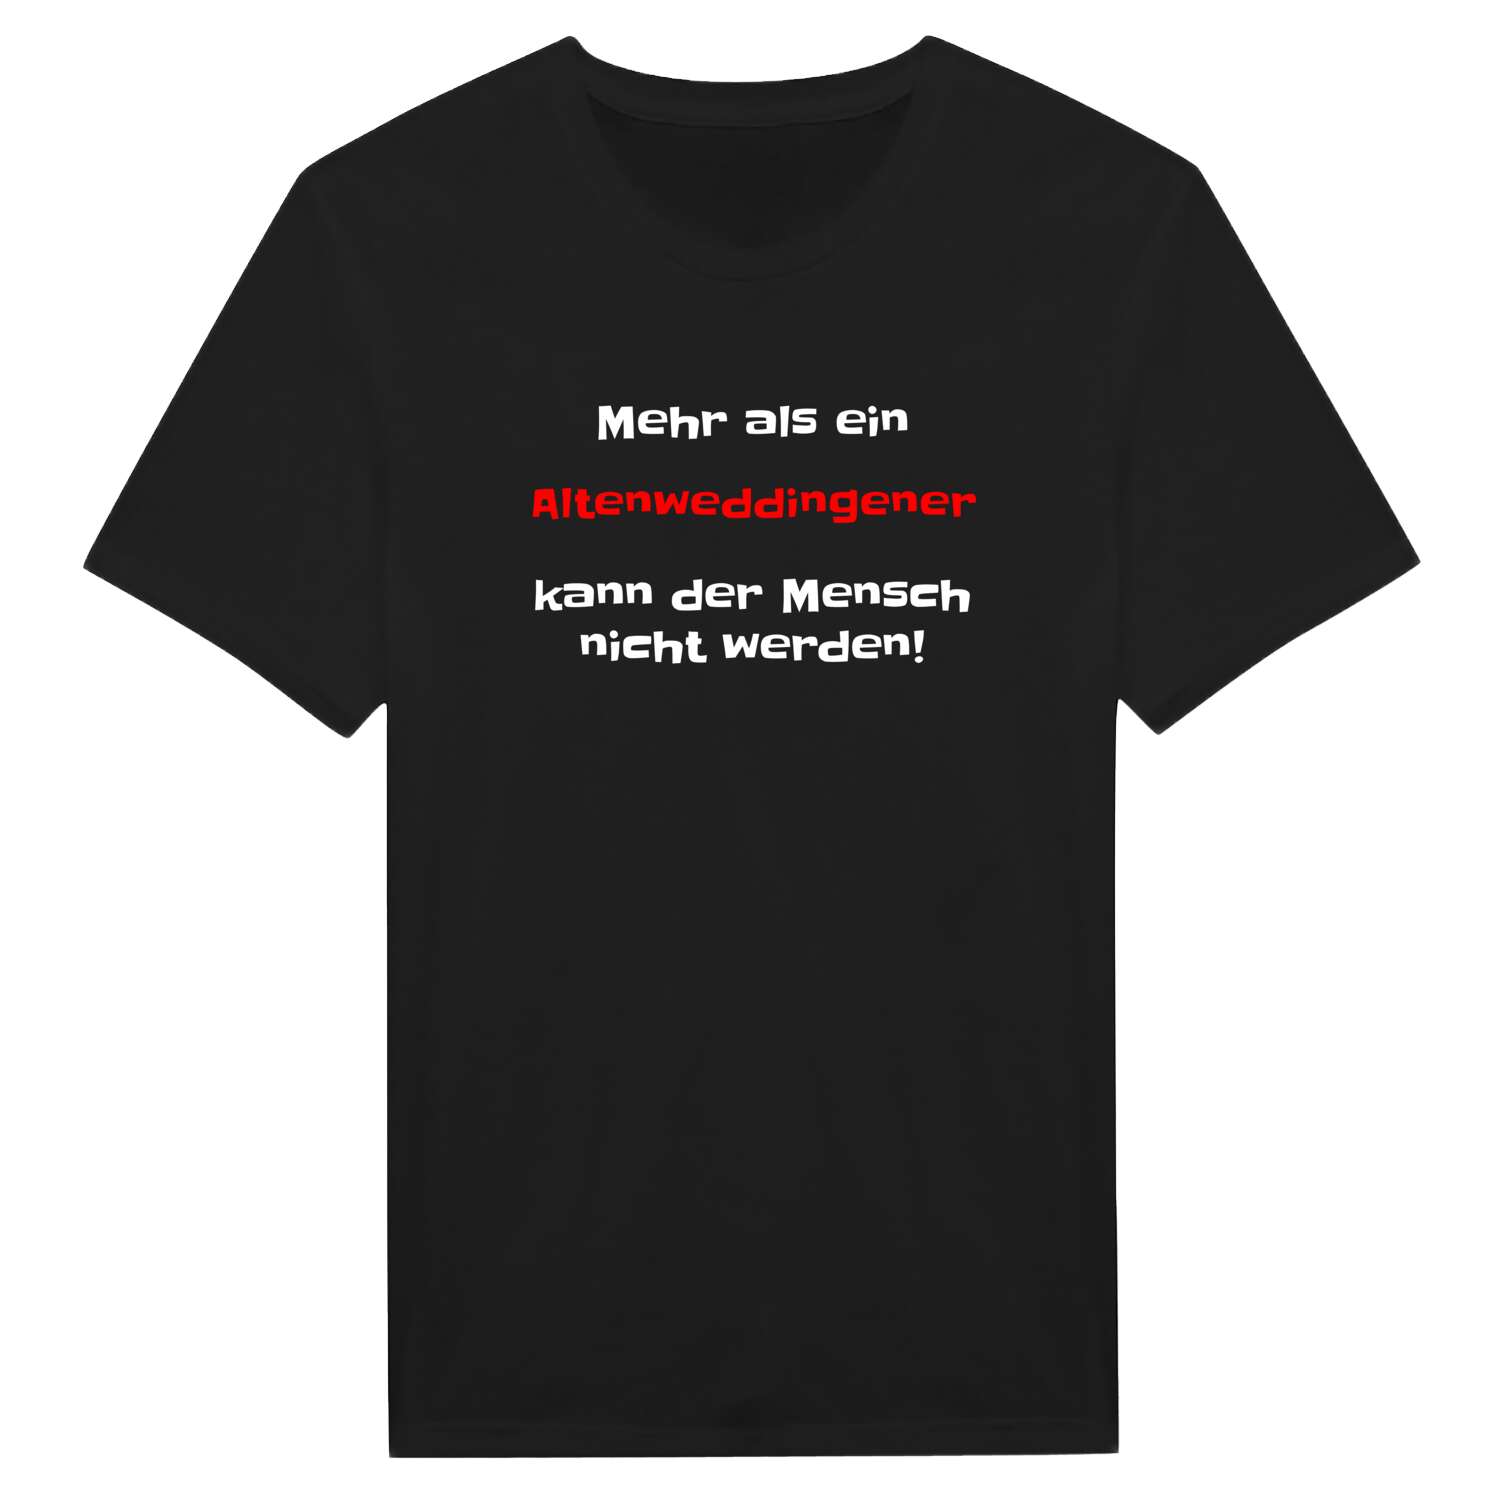 Altenweddingen T-Shirt »Mehr als ein«